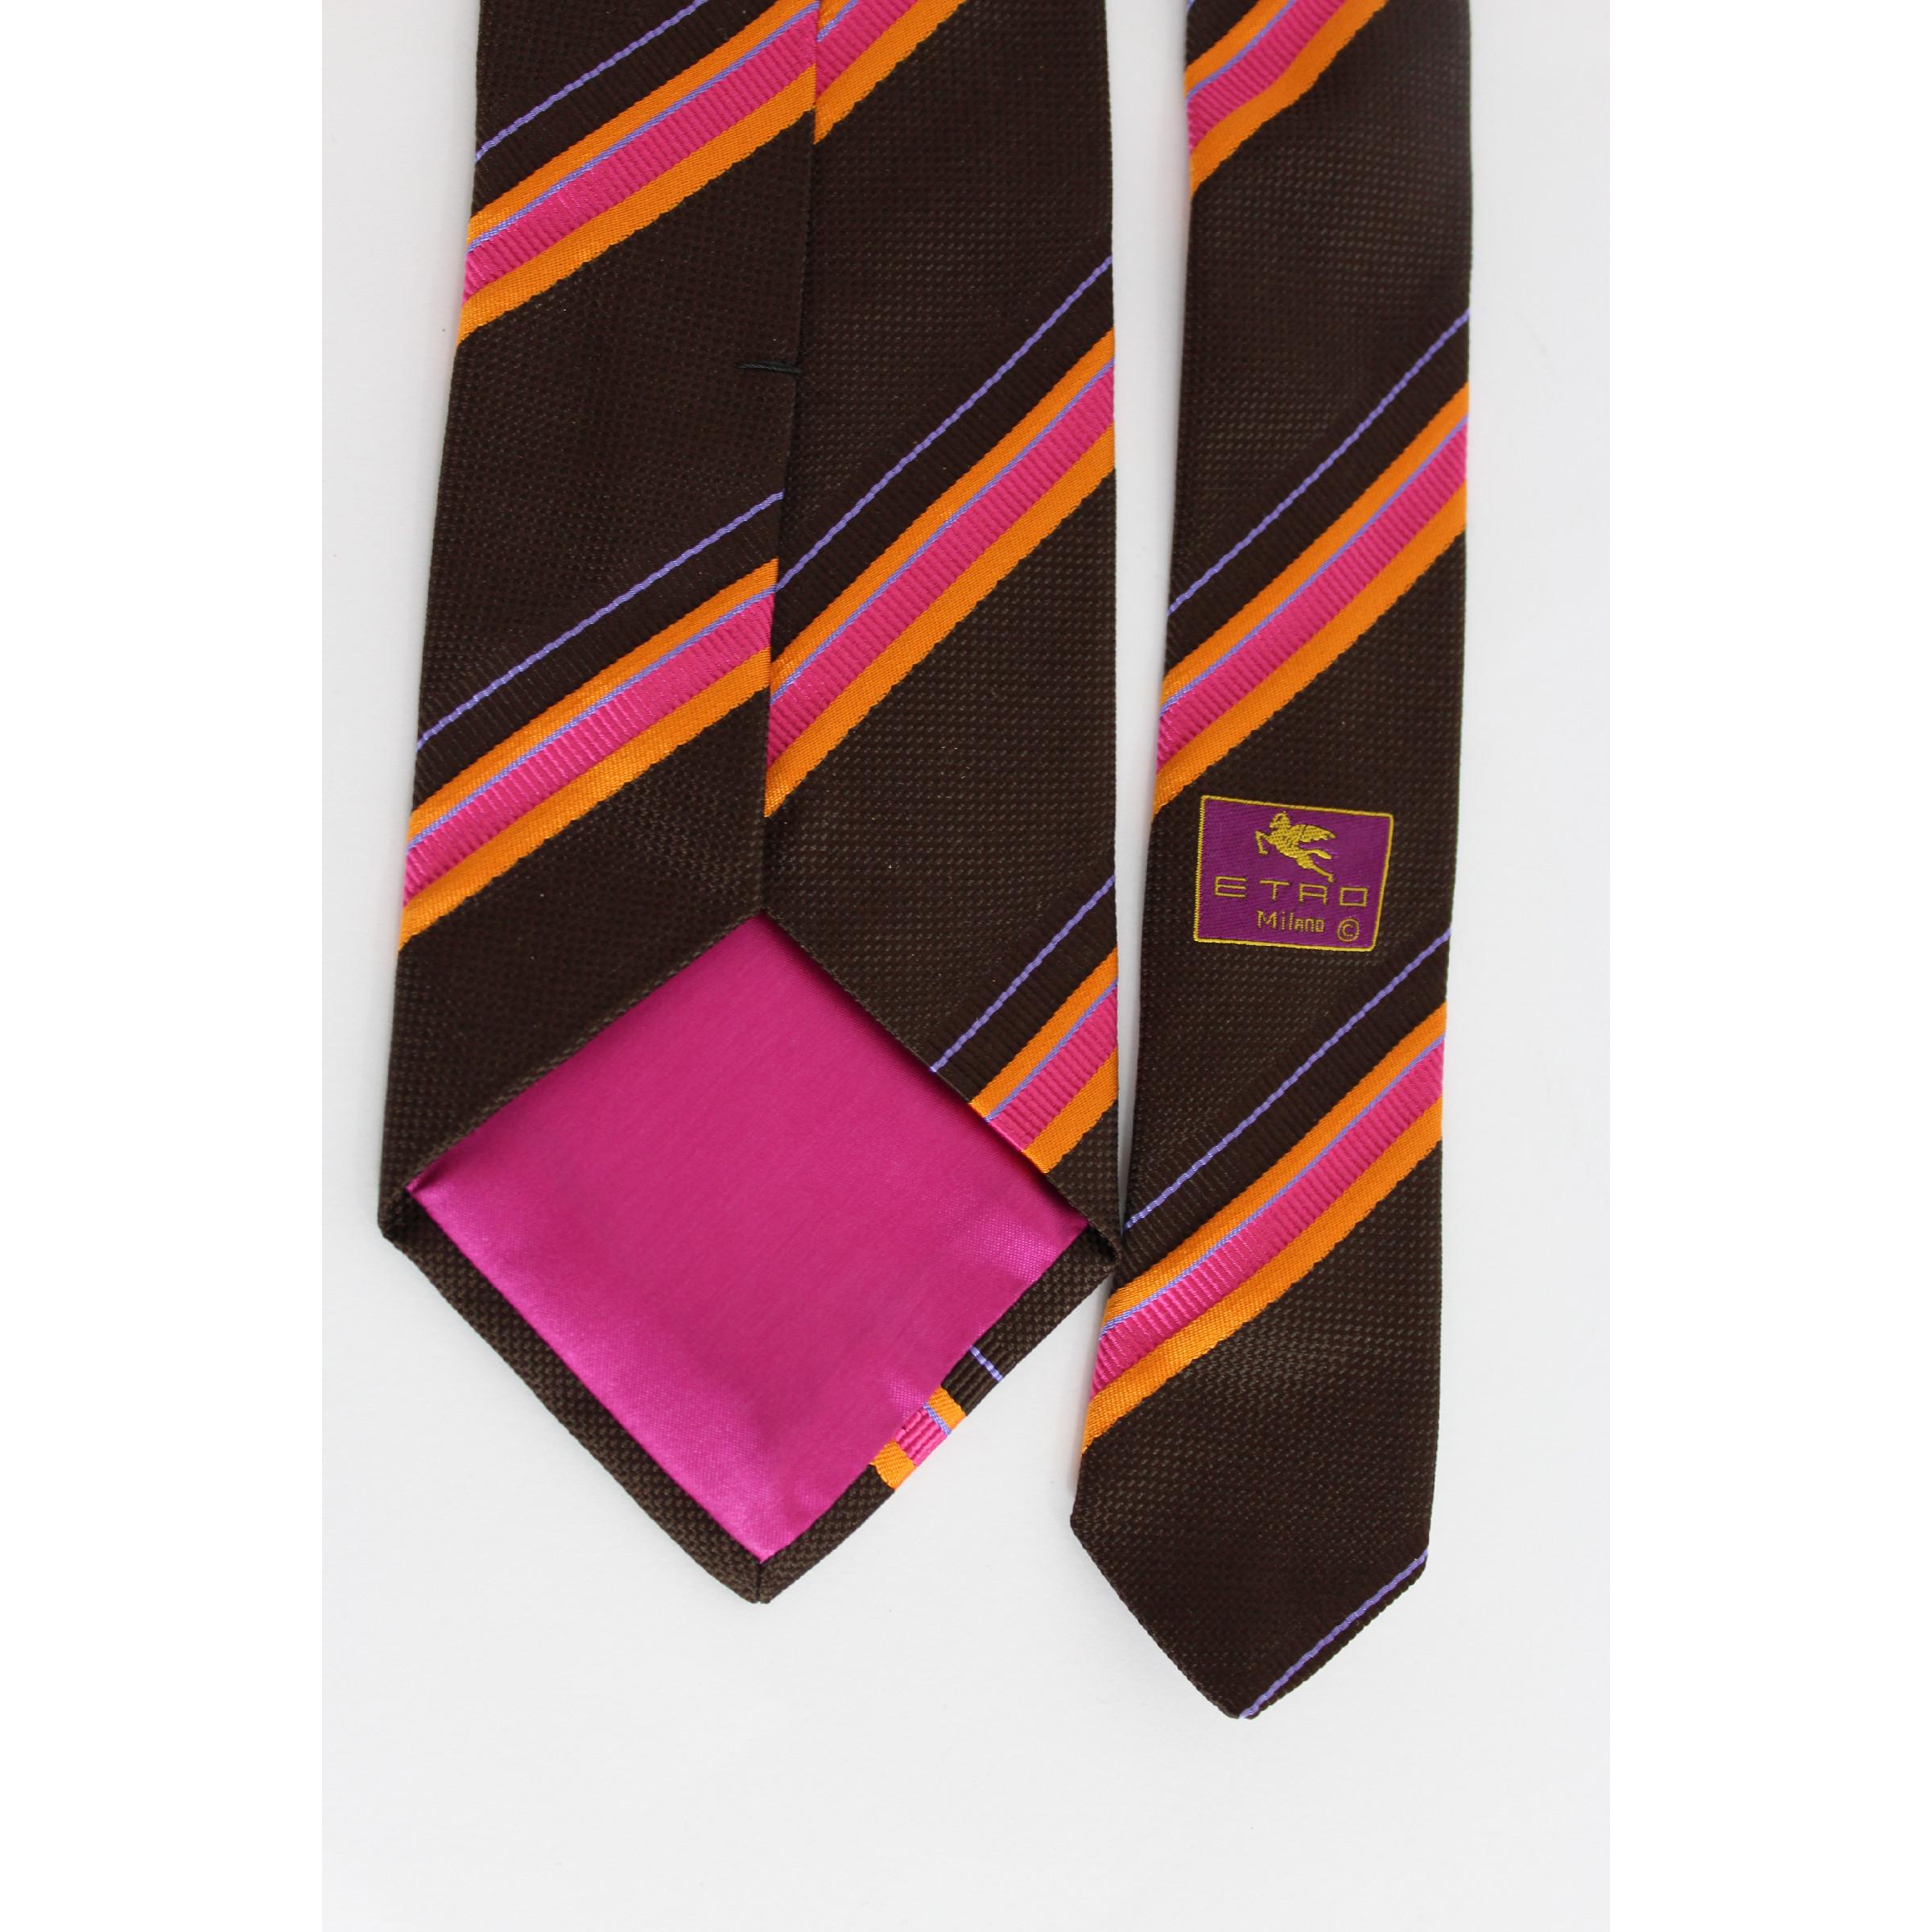 Etro Vintage 90er Jahre klassische Krawatte. Braun und rosa gestreift, 100% Seide. Made in Italy. Ausgezeichneter Vintage-Zustand

Länge: etwa 140 cm
Breite: etwa 9 cm